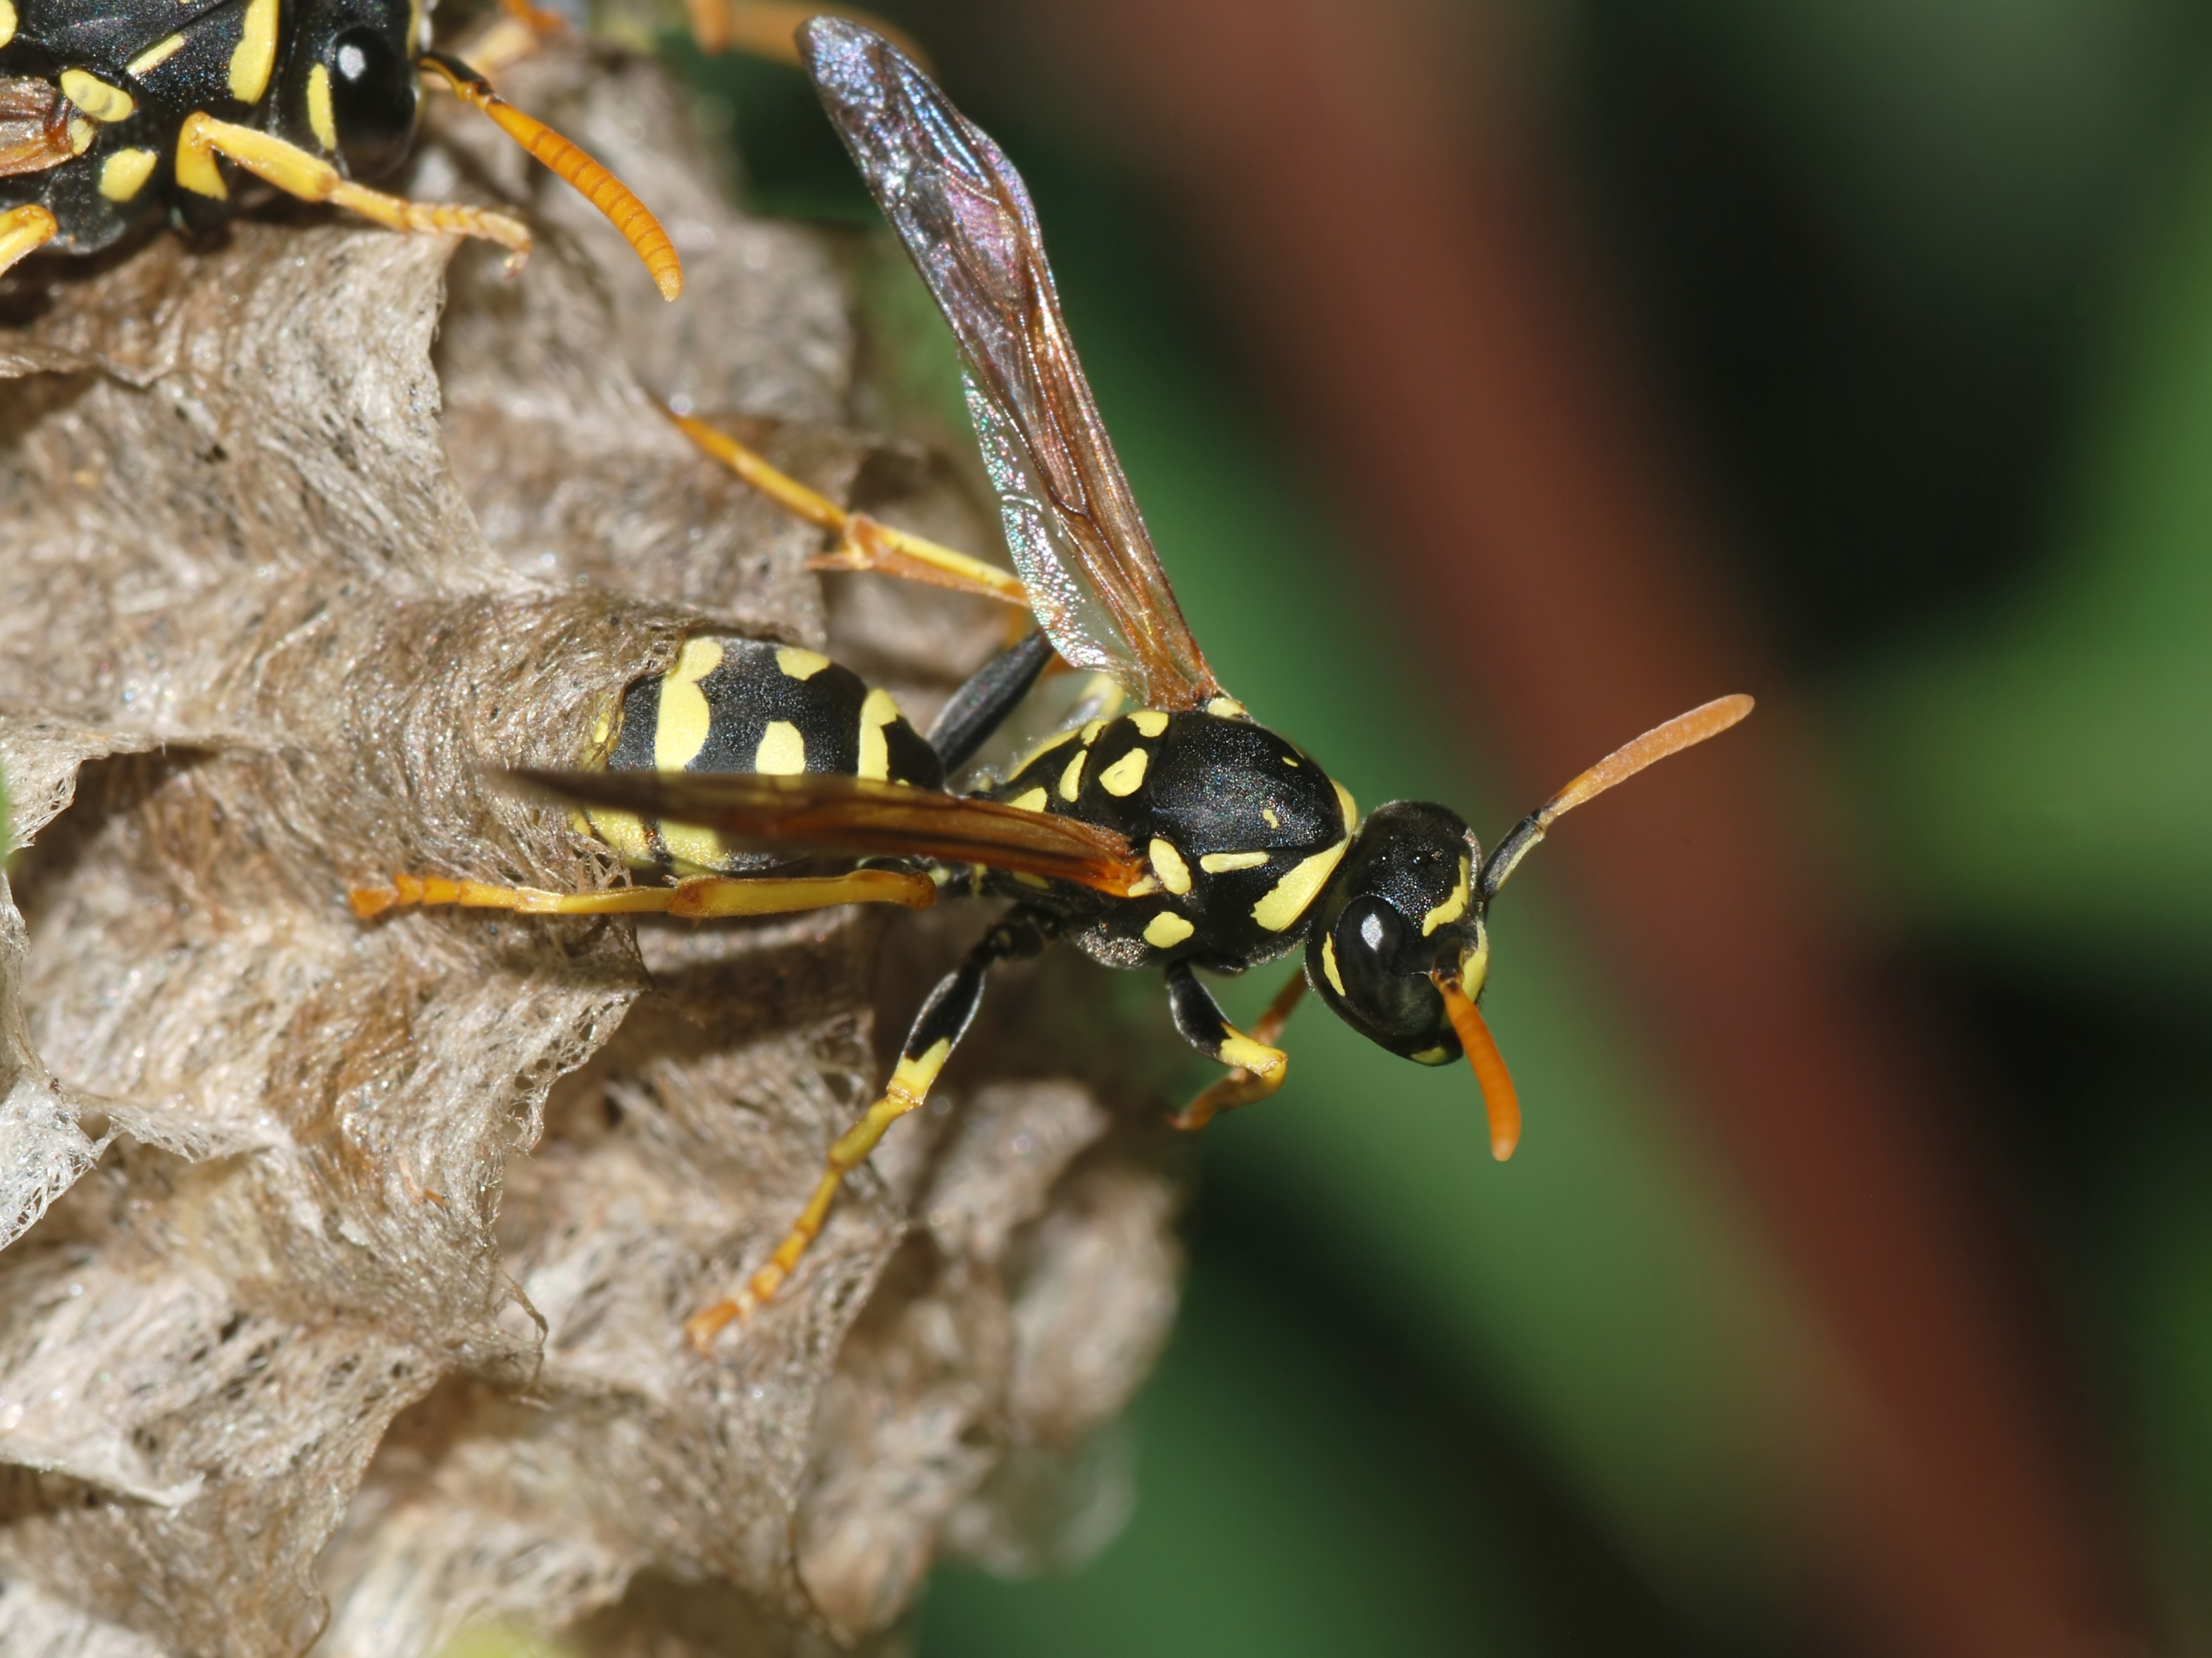 European Paper Wasp by Alvesgaspar